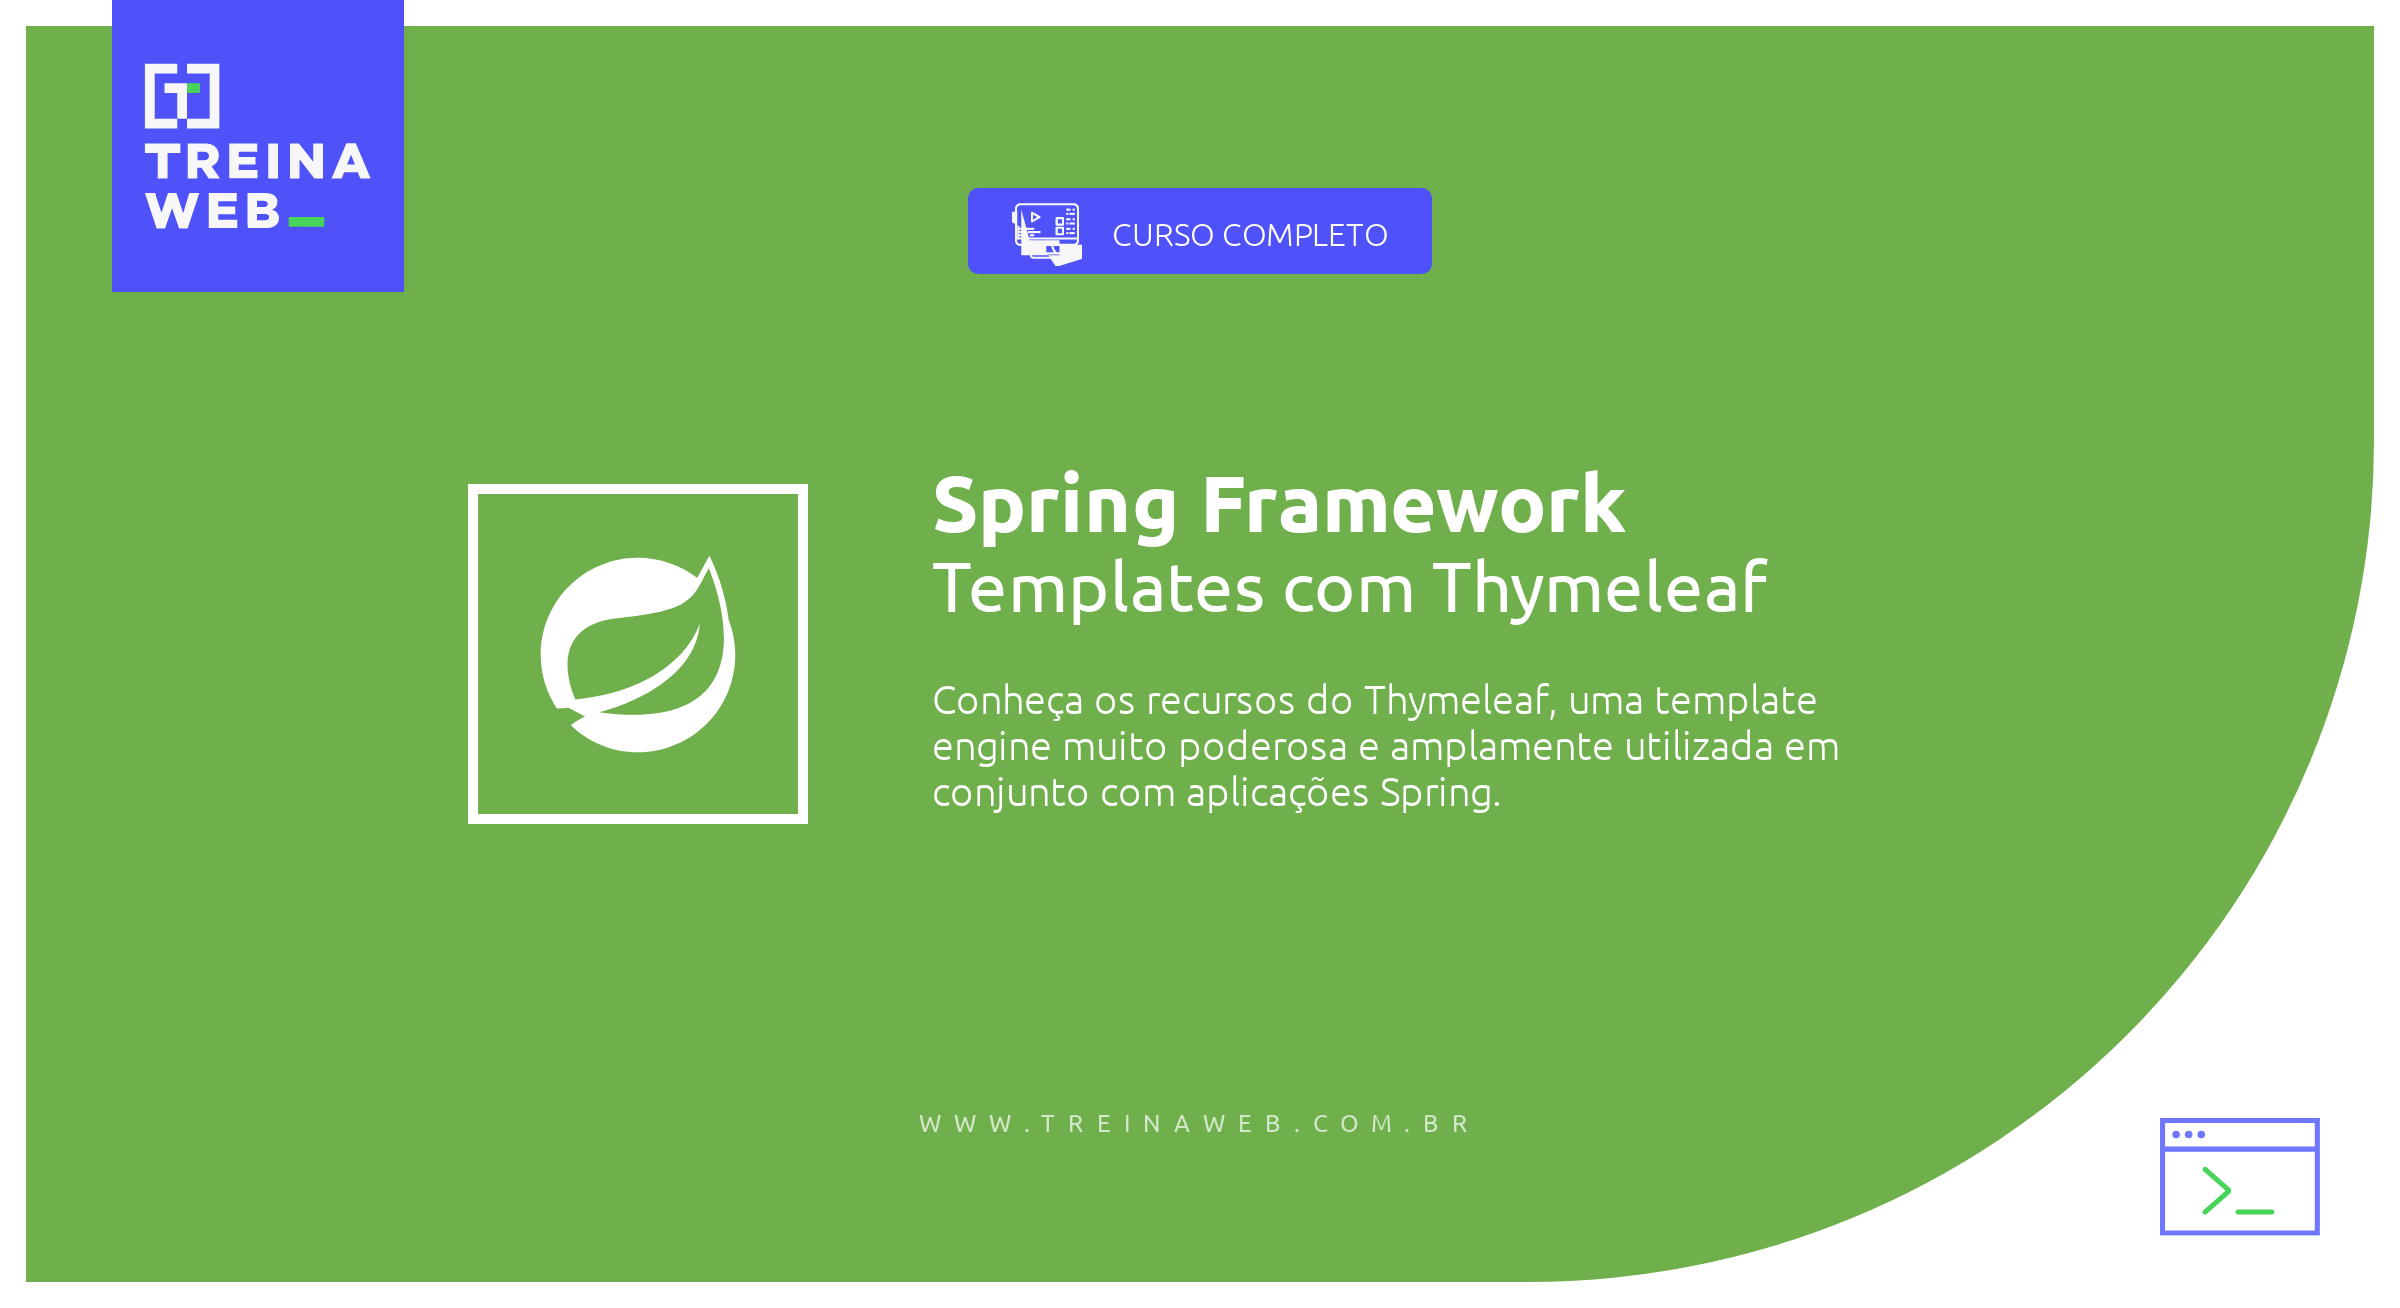 Imagem ilustrativa do curso Spring Framework - Templates com Thymeleaf